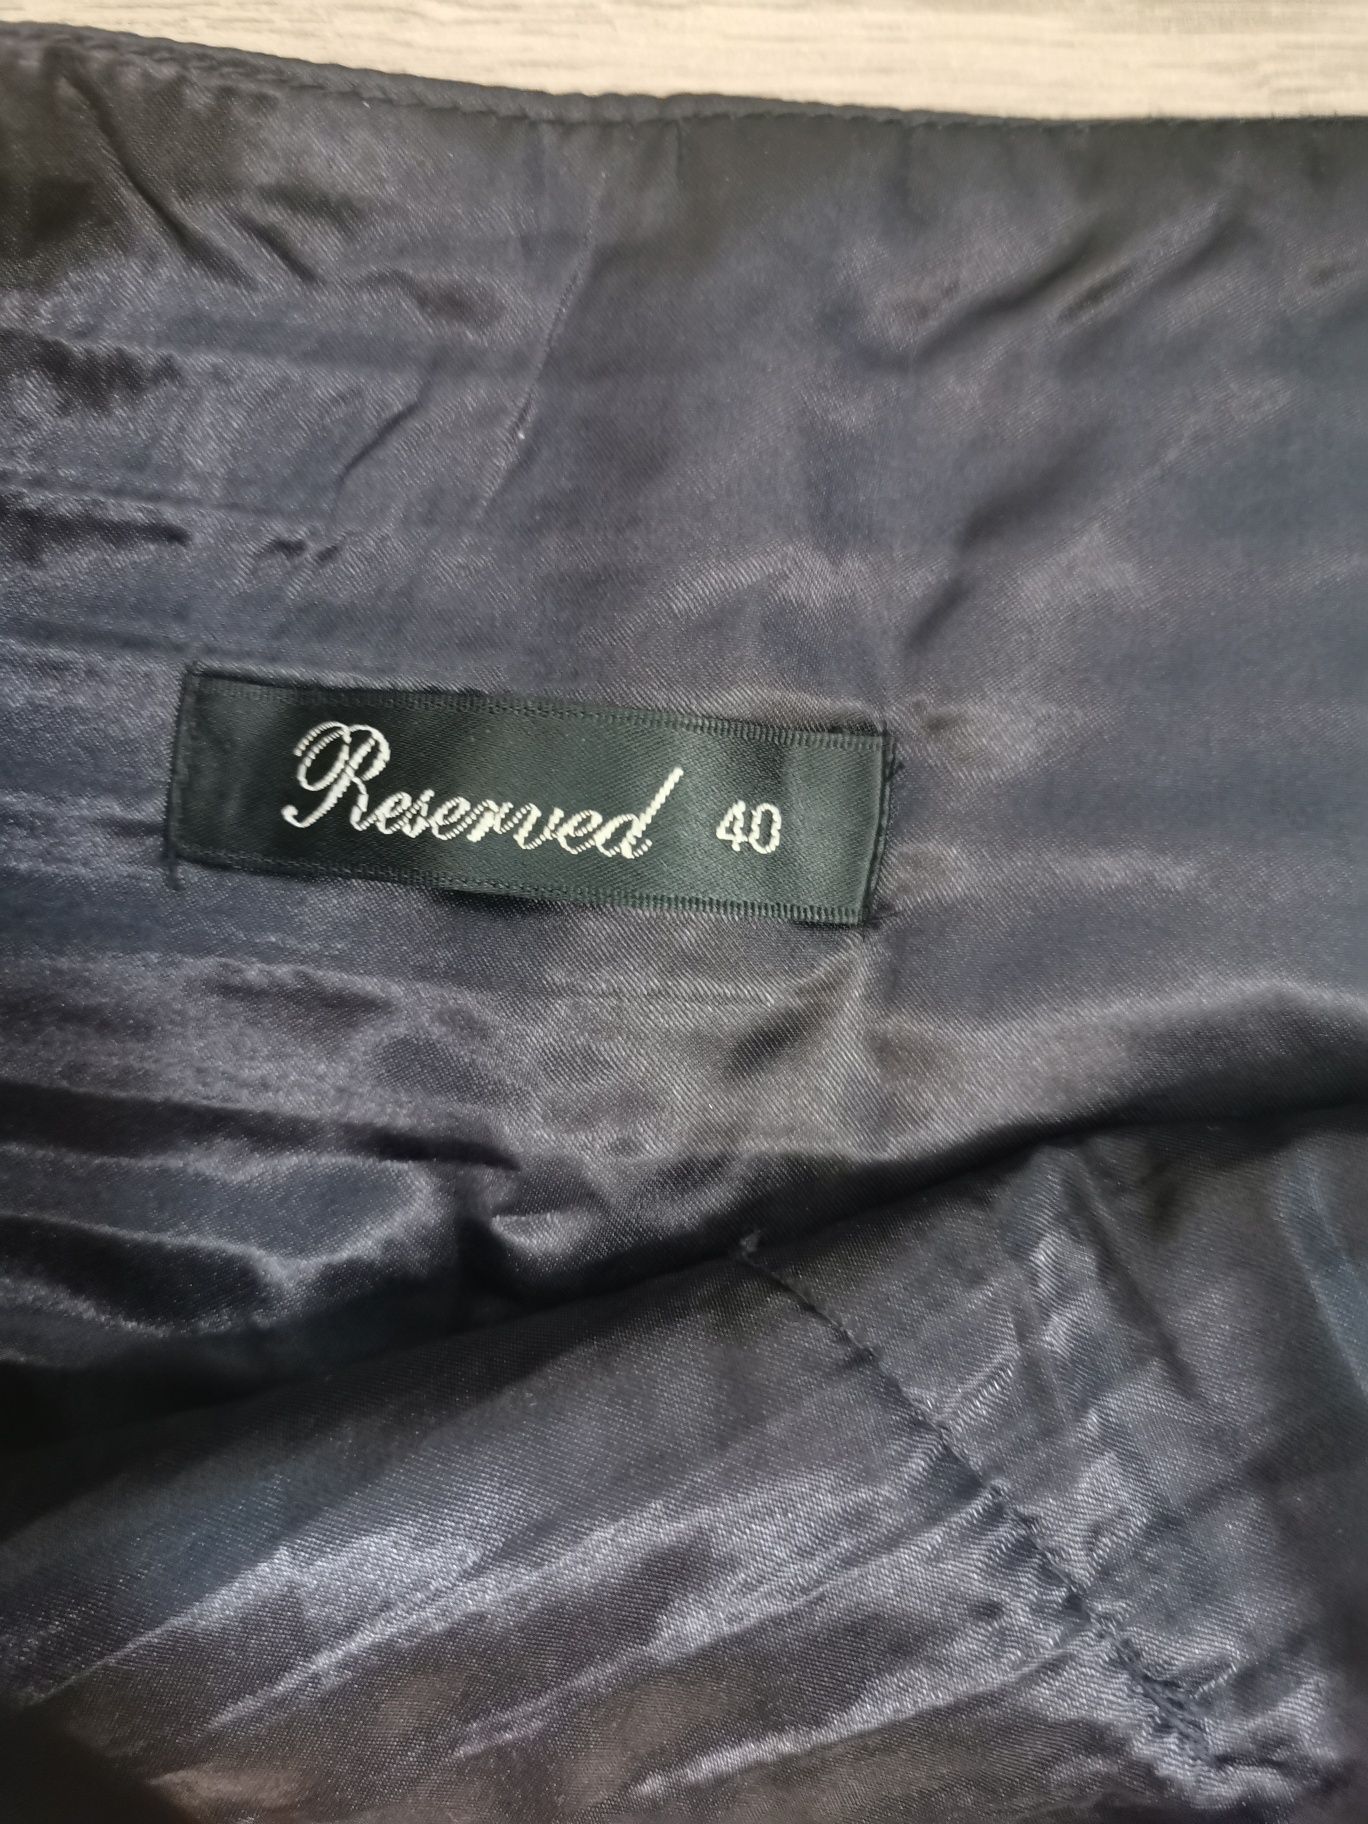 Reserved 40 L fioletowa śliwkowa elegancka spódnica ozdobny pas kokard